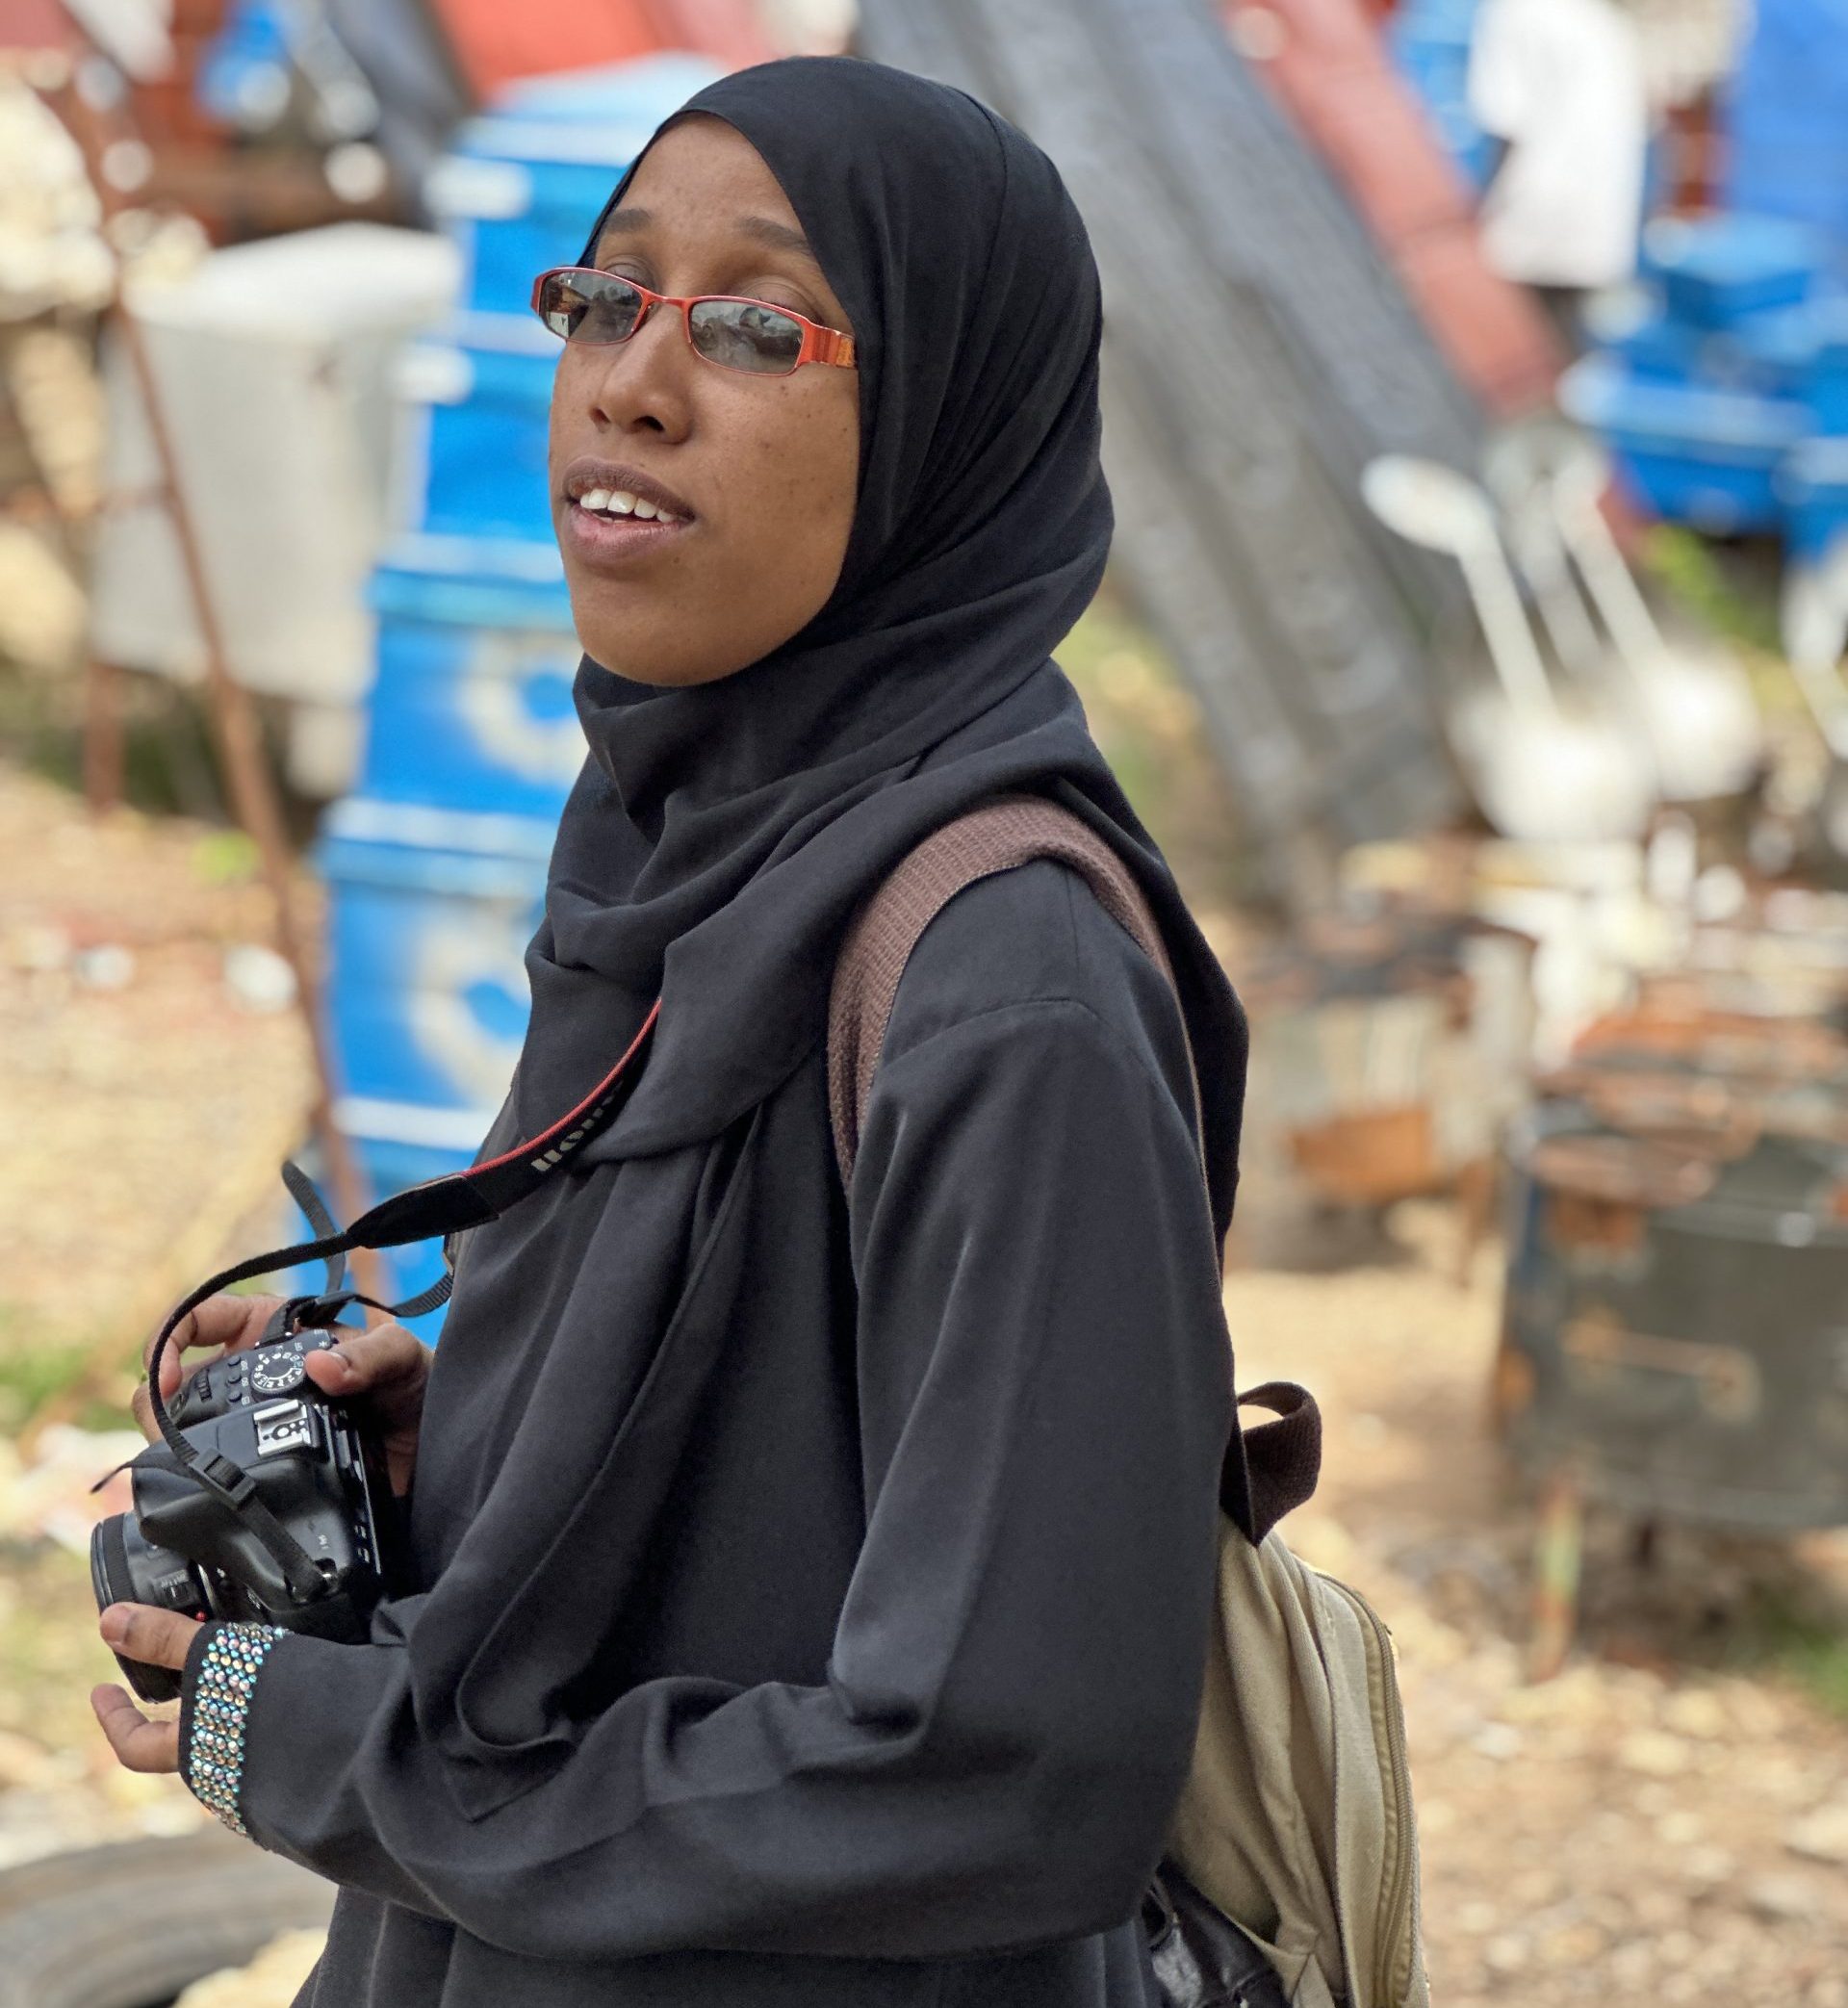 Mima, a member of the Photographers' Association of Malindi